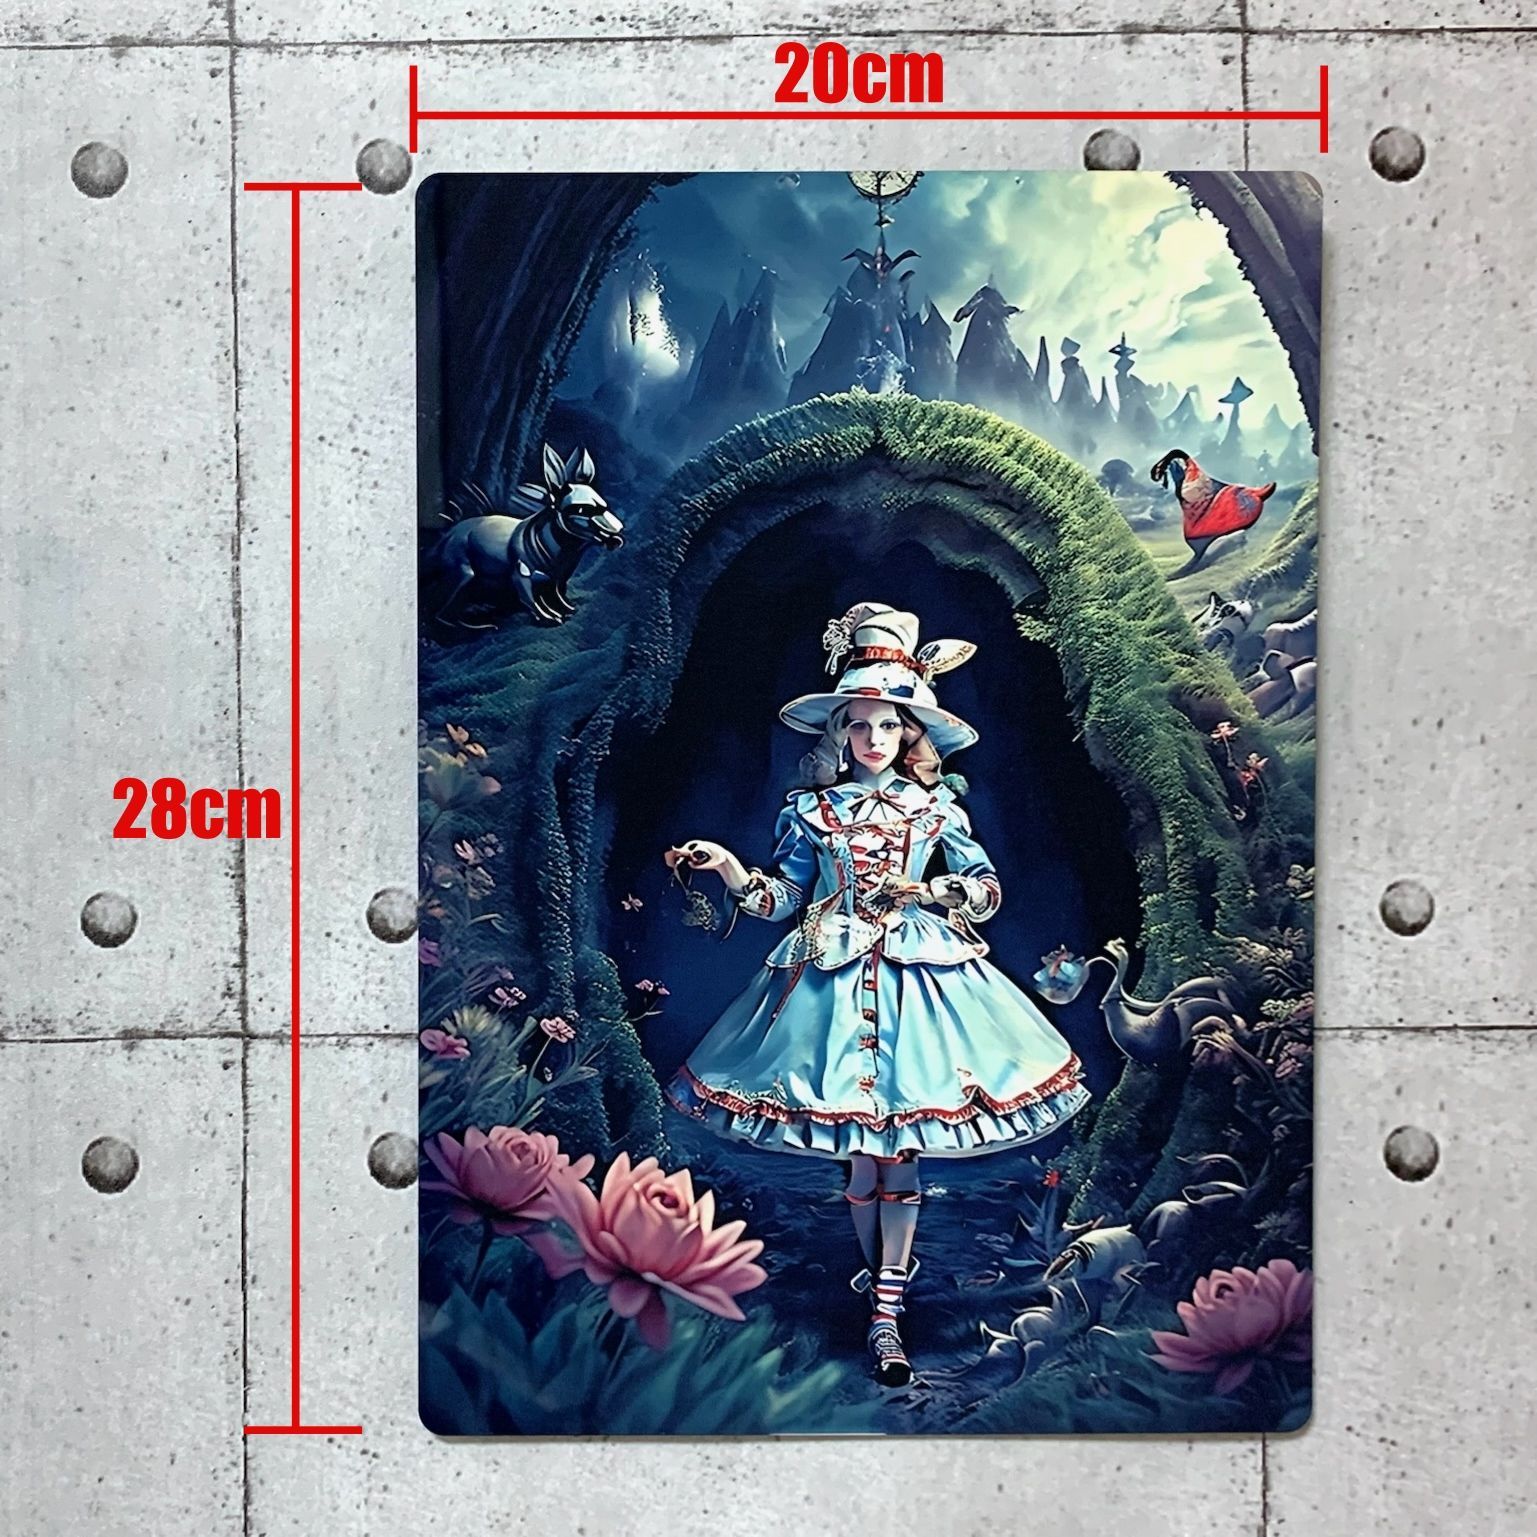 壁掛け メタルアートパネル 28cm×20cm (A4-10) - メルカリ